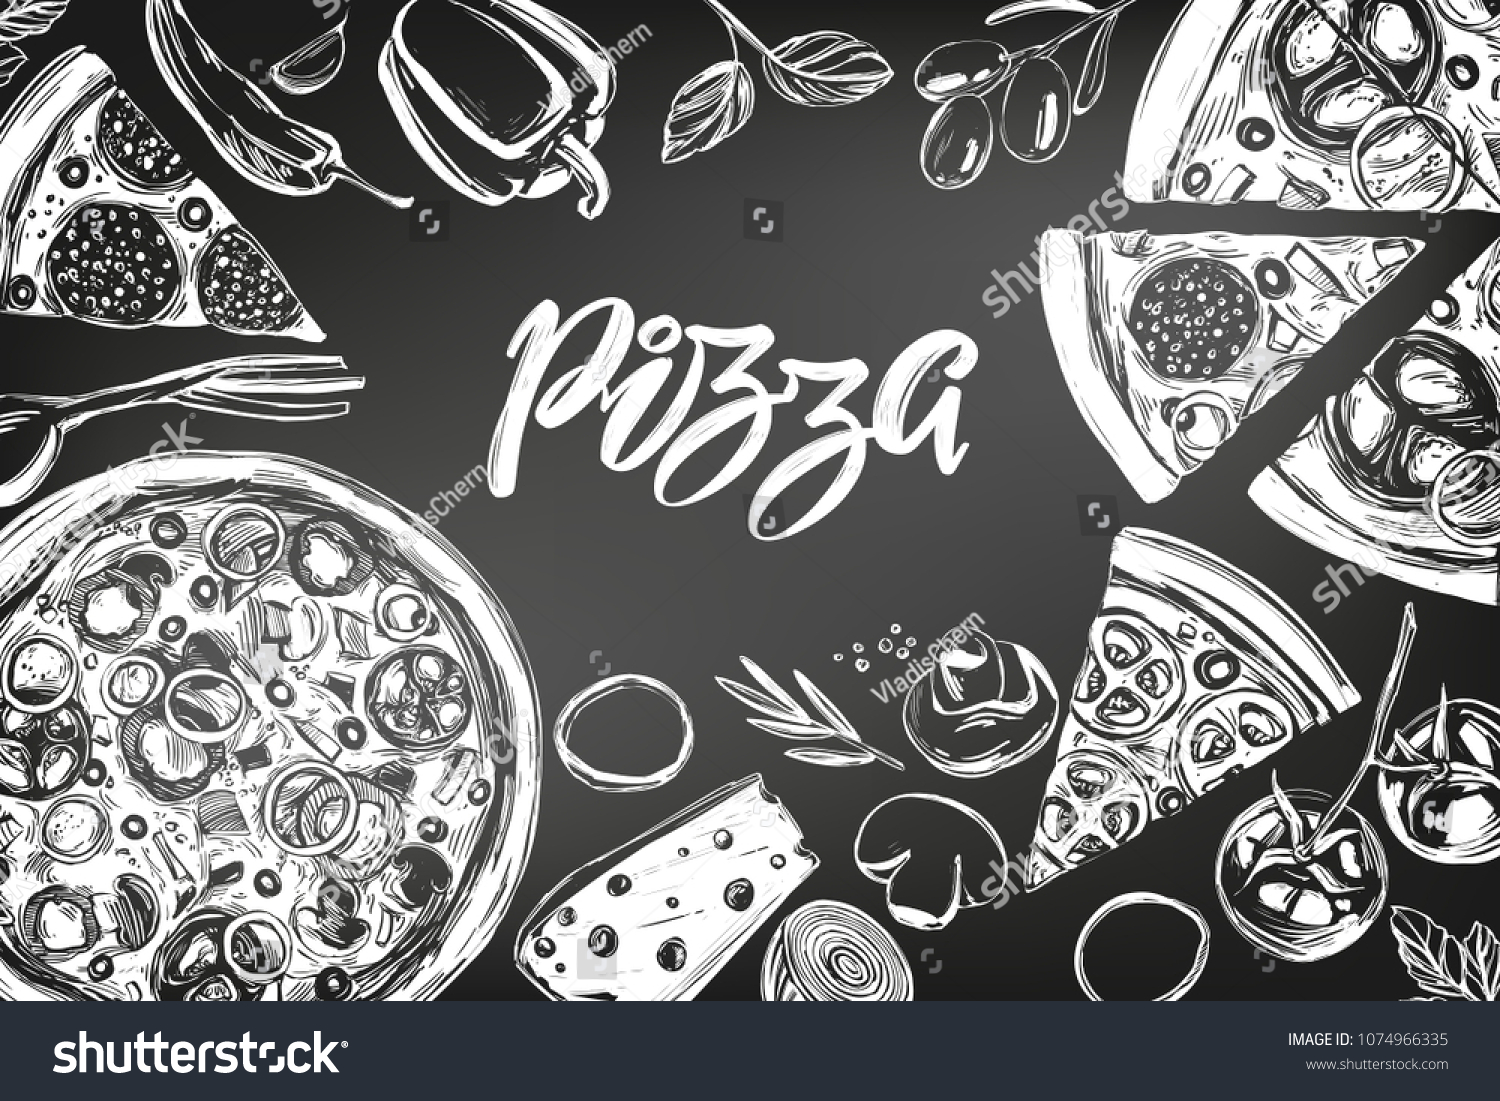 картинки роллы пицца на стены черно белые